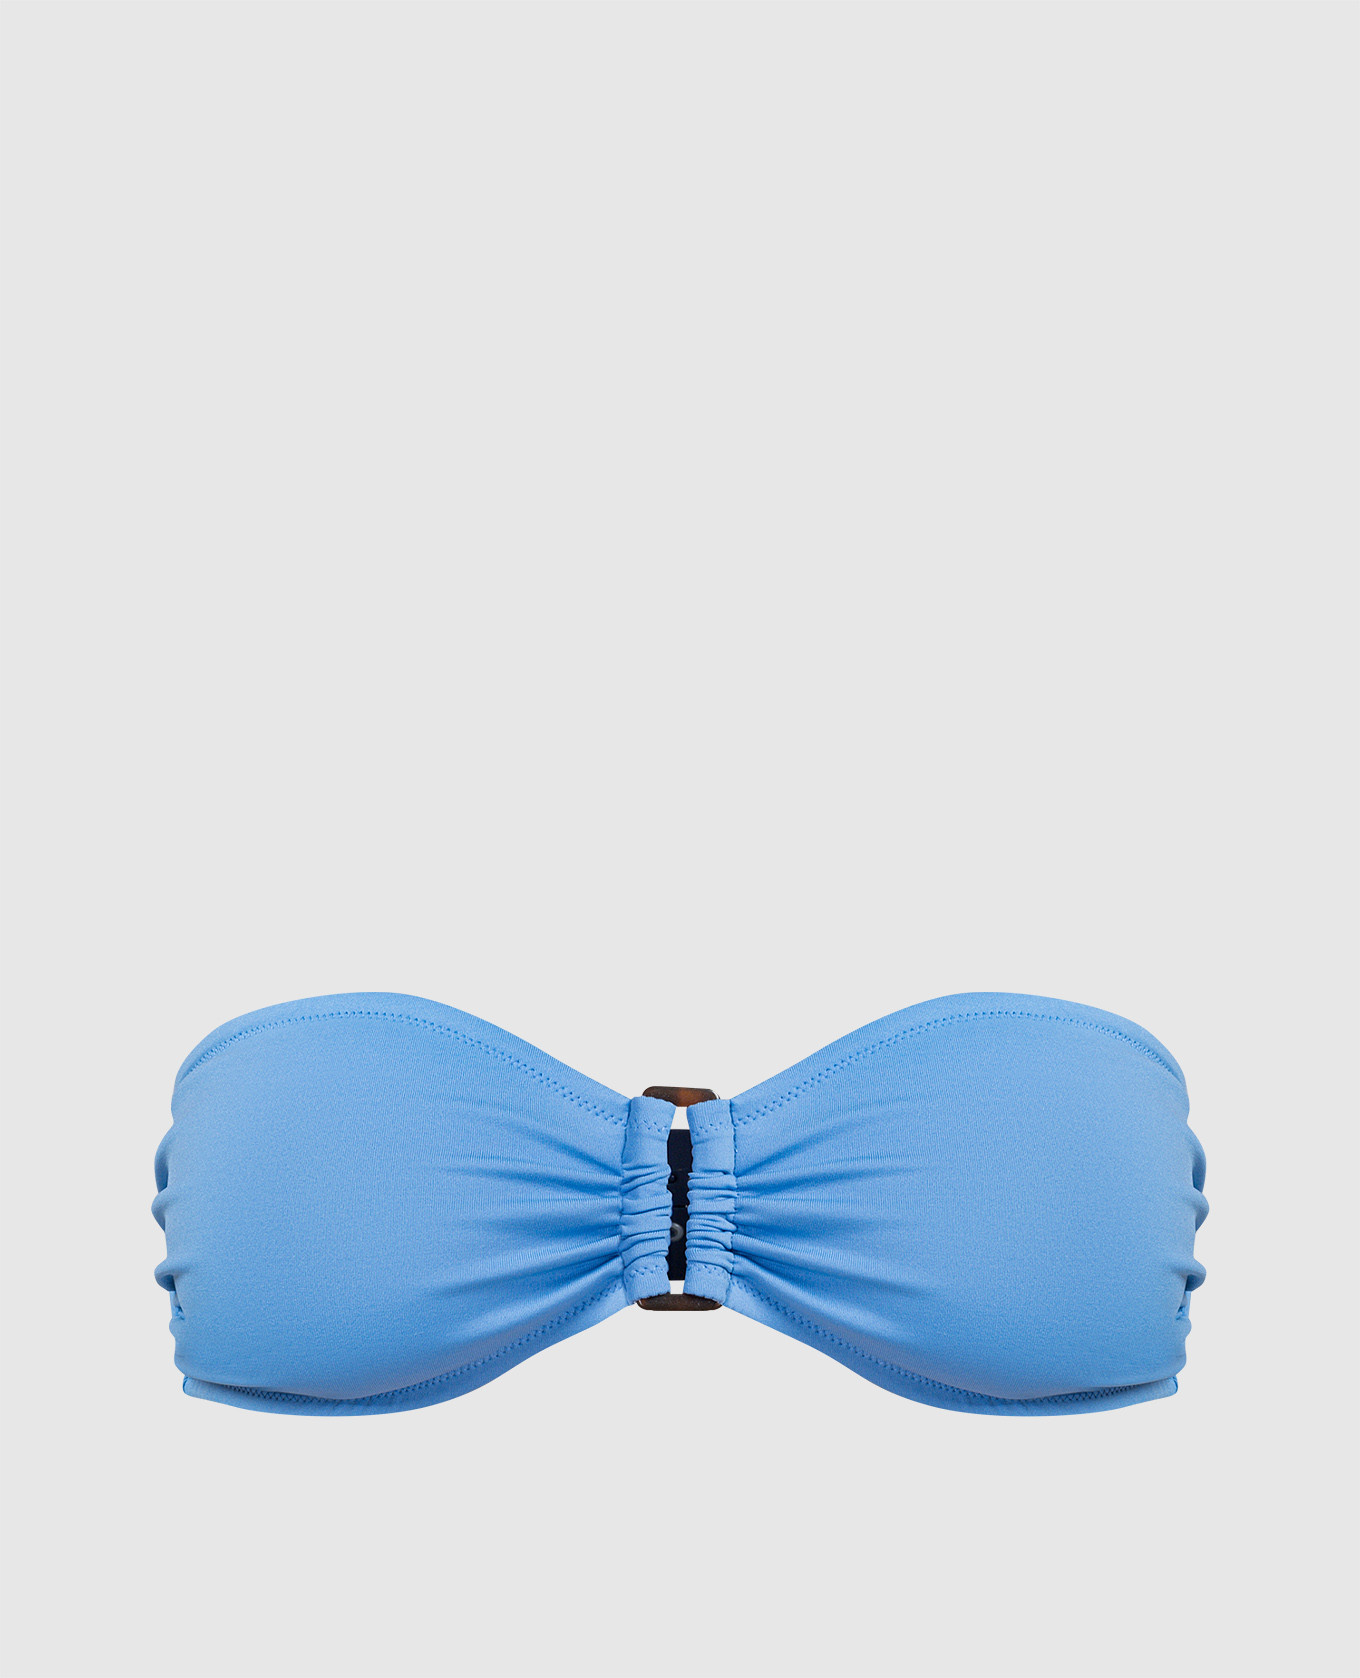 Blue bodice from Luce swimwear